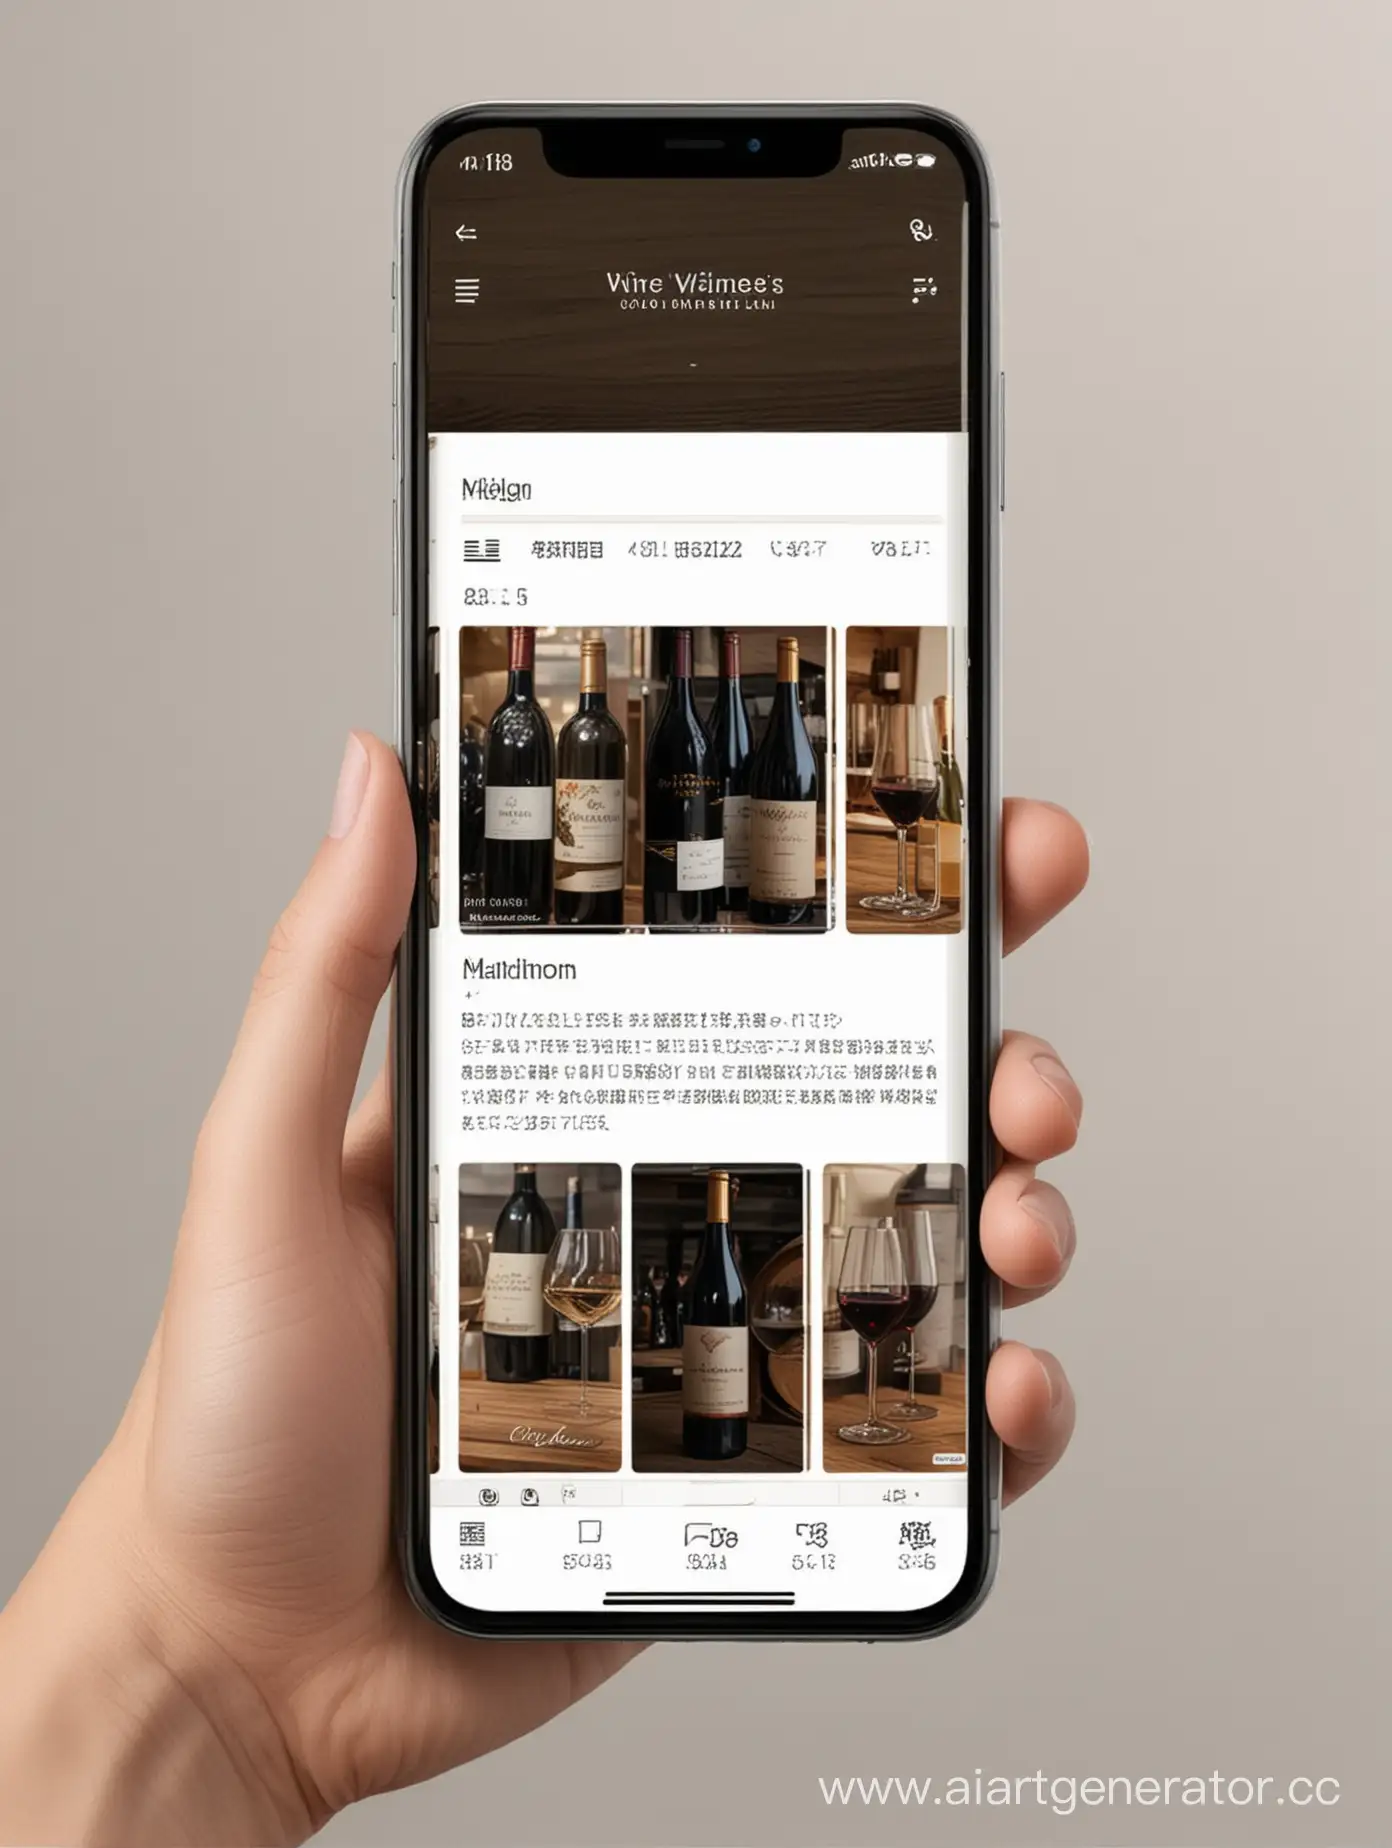 интерфейс мобильного приложения с каталогом и открытой карточкой товарной позиции вина 